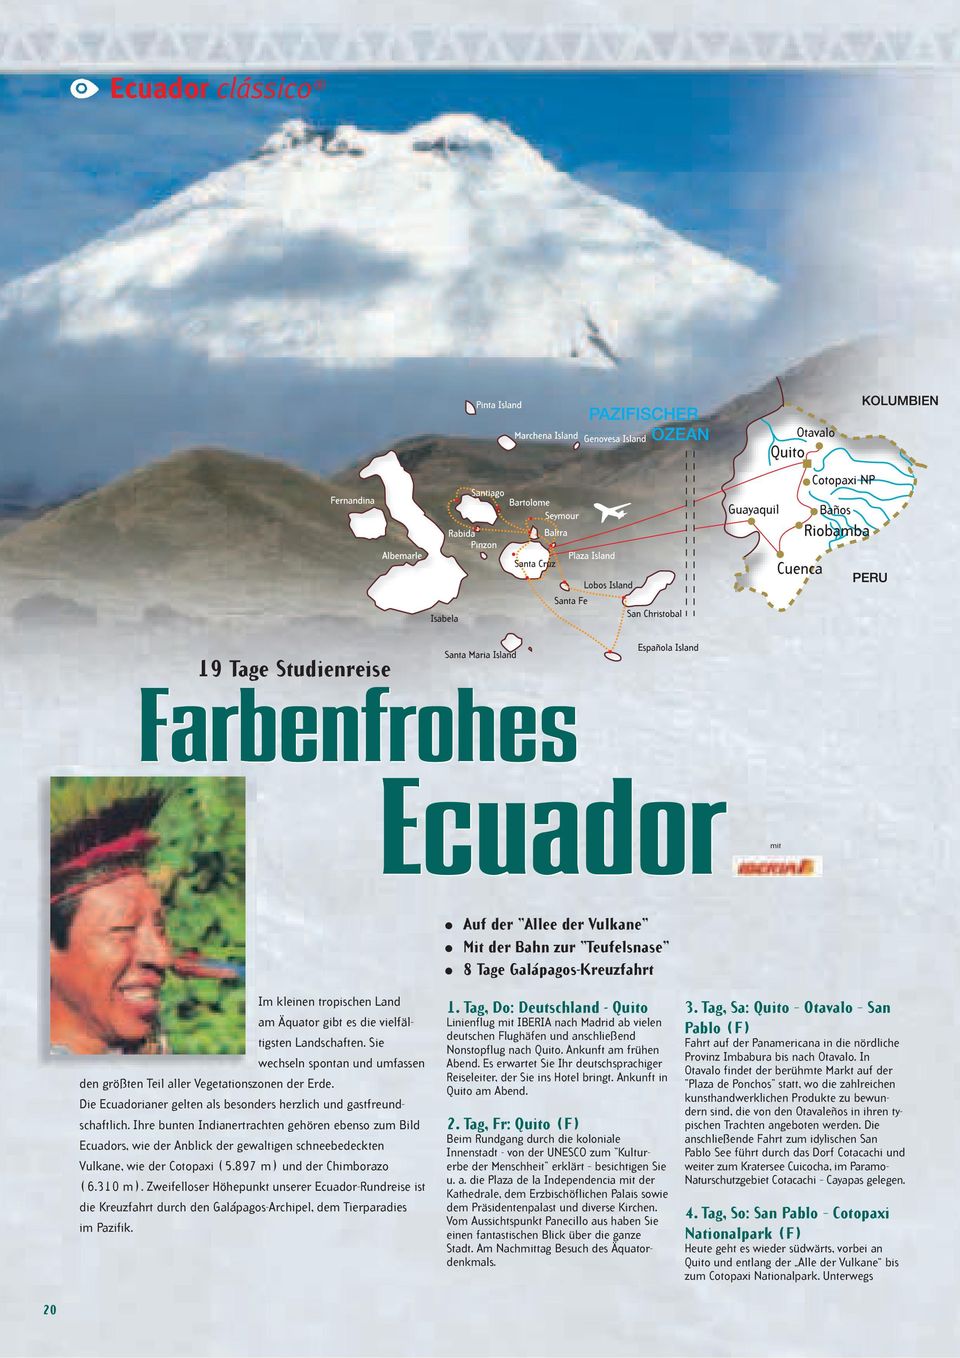 Ihre bunten Indianertrachten gehören ebenso zum Bild Ecuadors, wie der Anblick der gewaltigen schneebedeckten Vulkane, wie der Cotopaxi (5.897 m) und der Chimborazo (6.310 m).